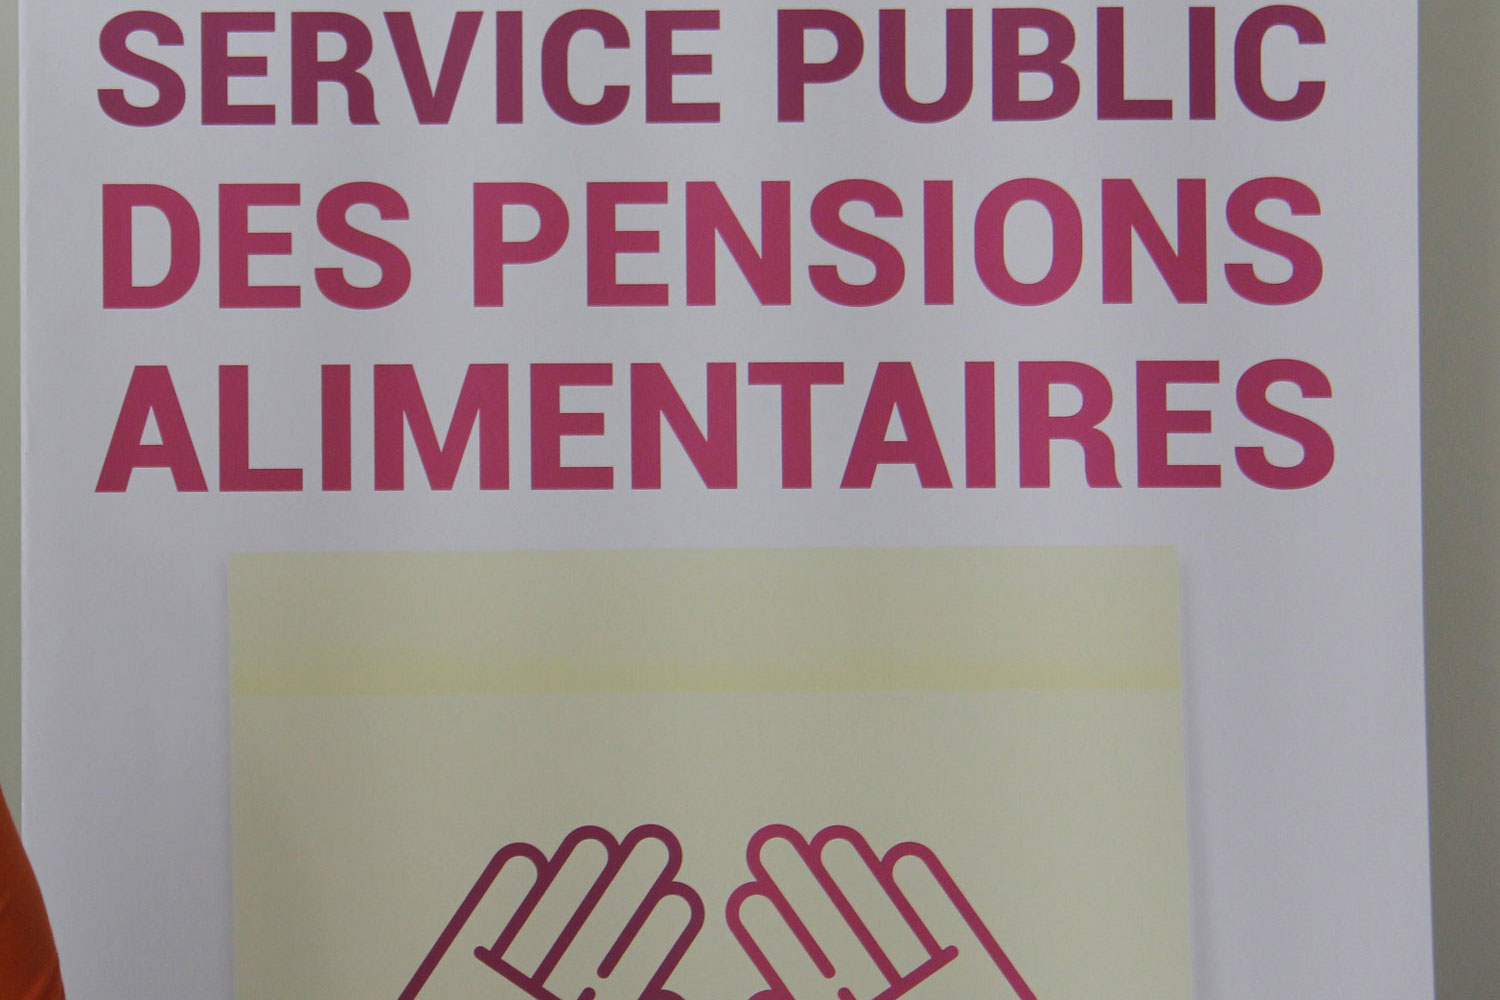 Le service public des pensions alimentaires a été inspiré par le système québécois et agit comme médiateur entre les parents divorcés © Globe Reporters